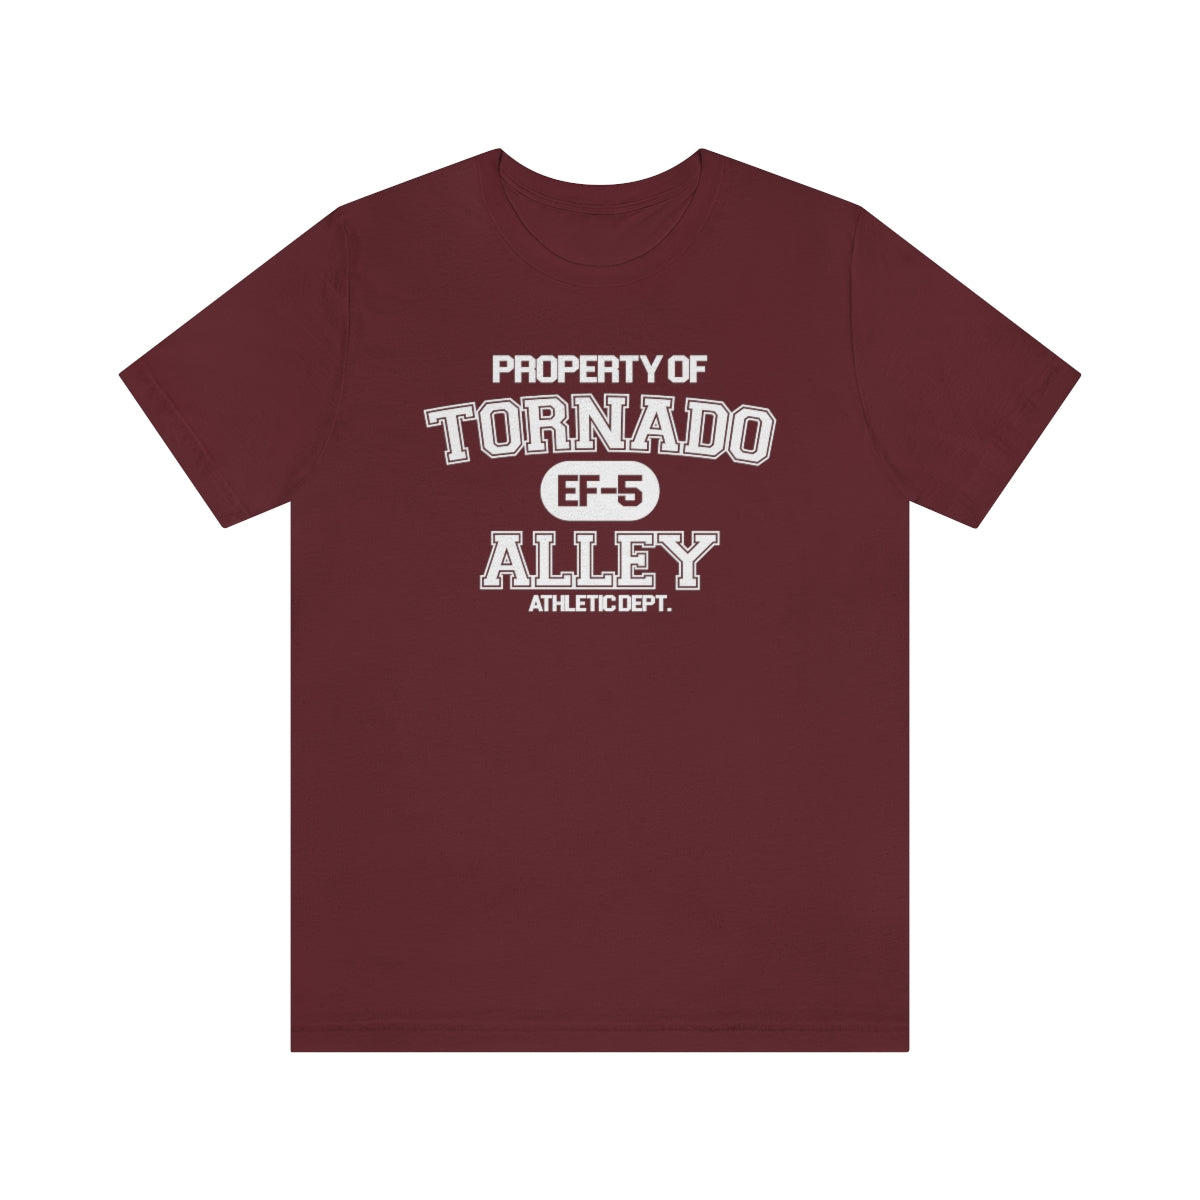 Tornado Alley Athletic Dept. Tee 